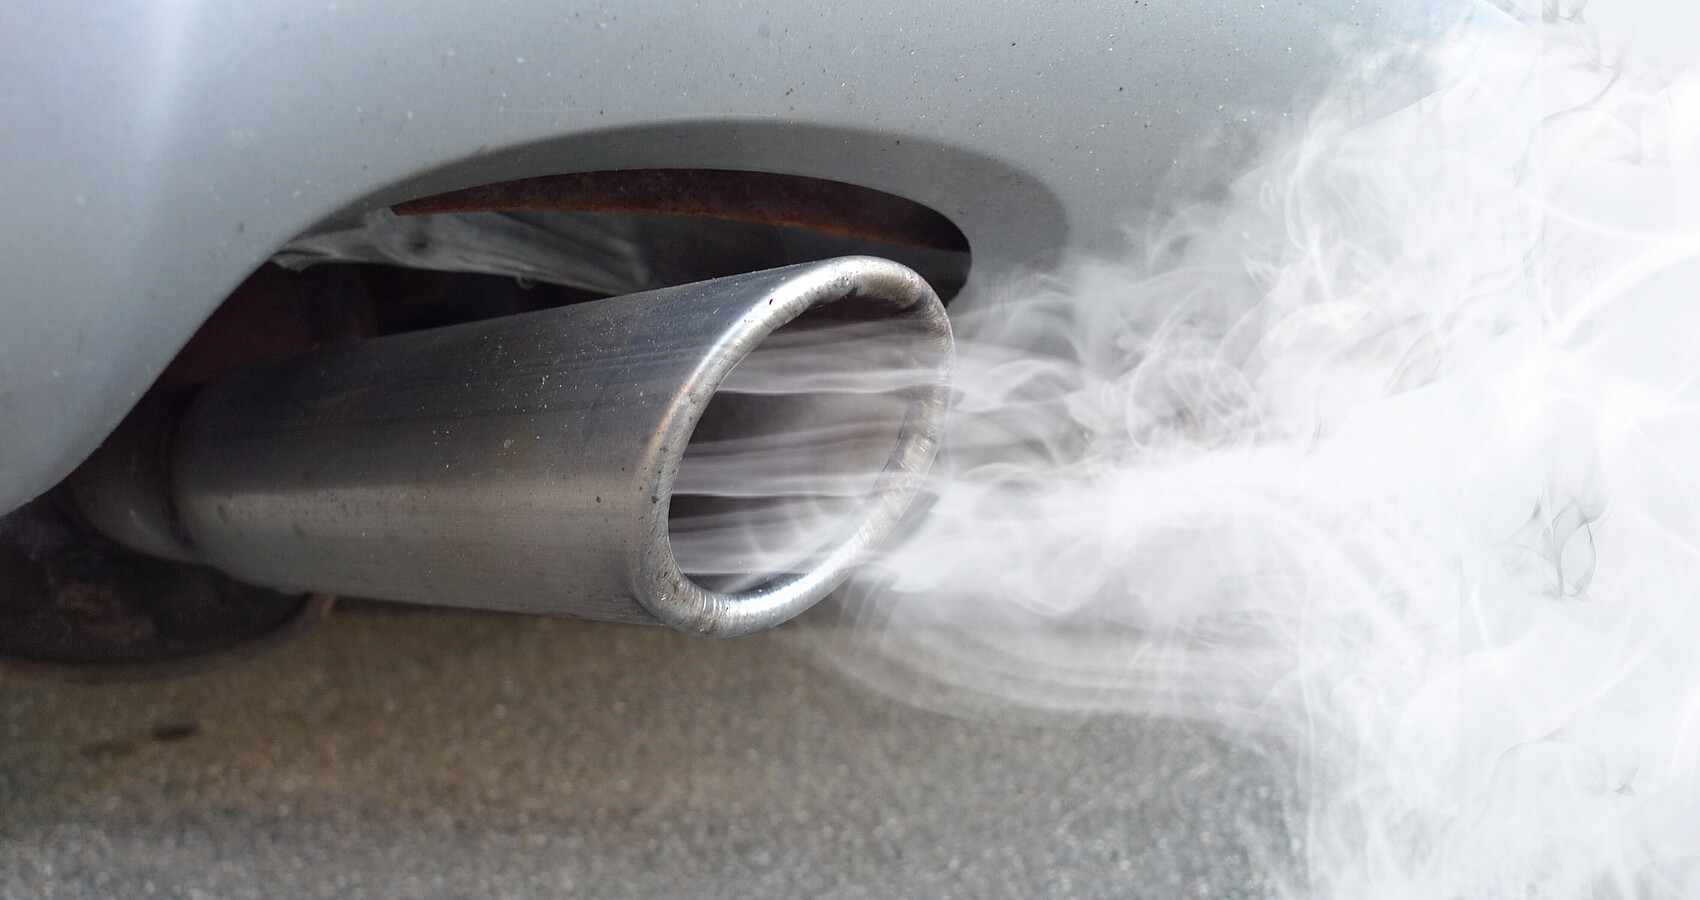 Bild zeigt einen rauchenden Autoauspuff